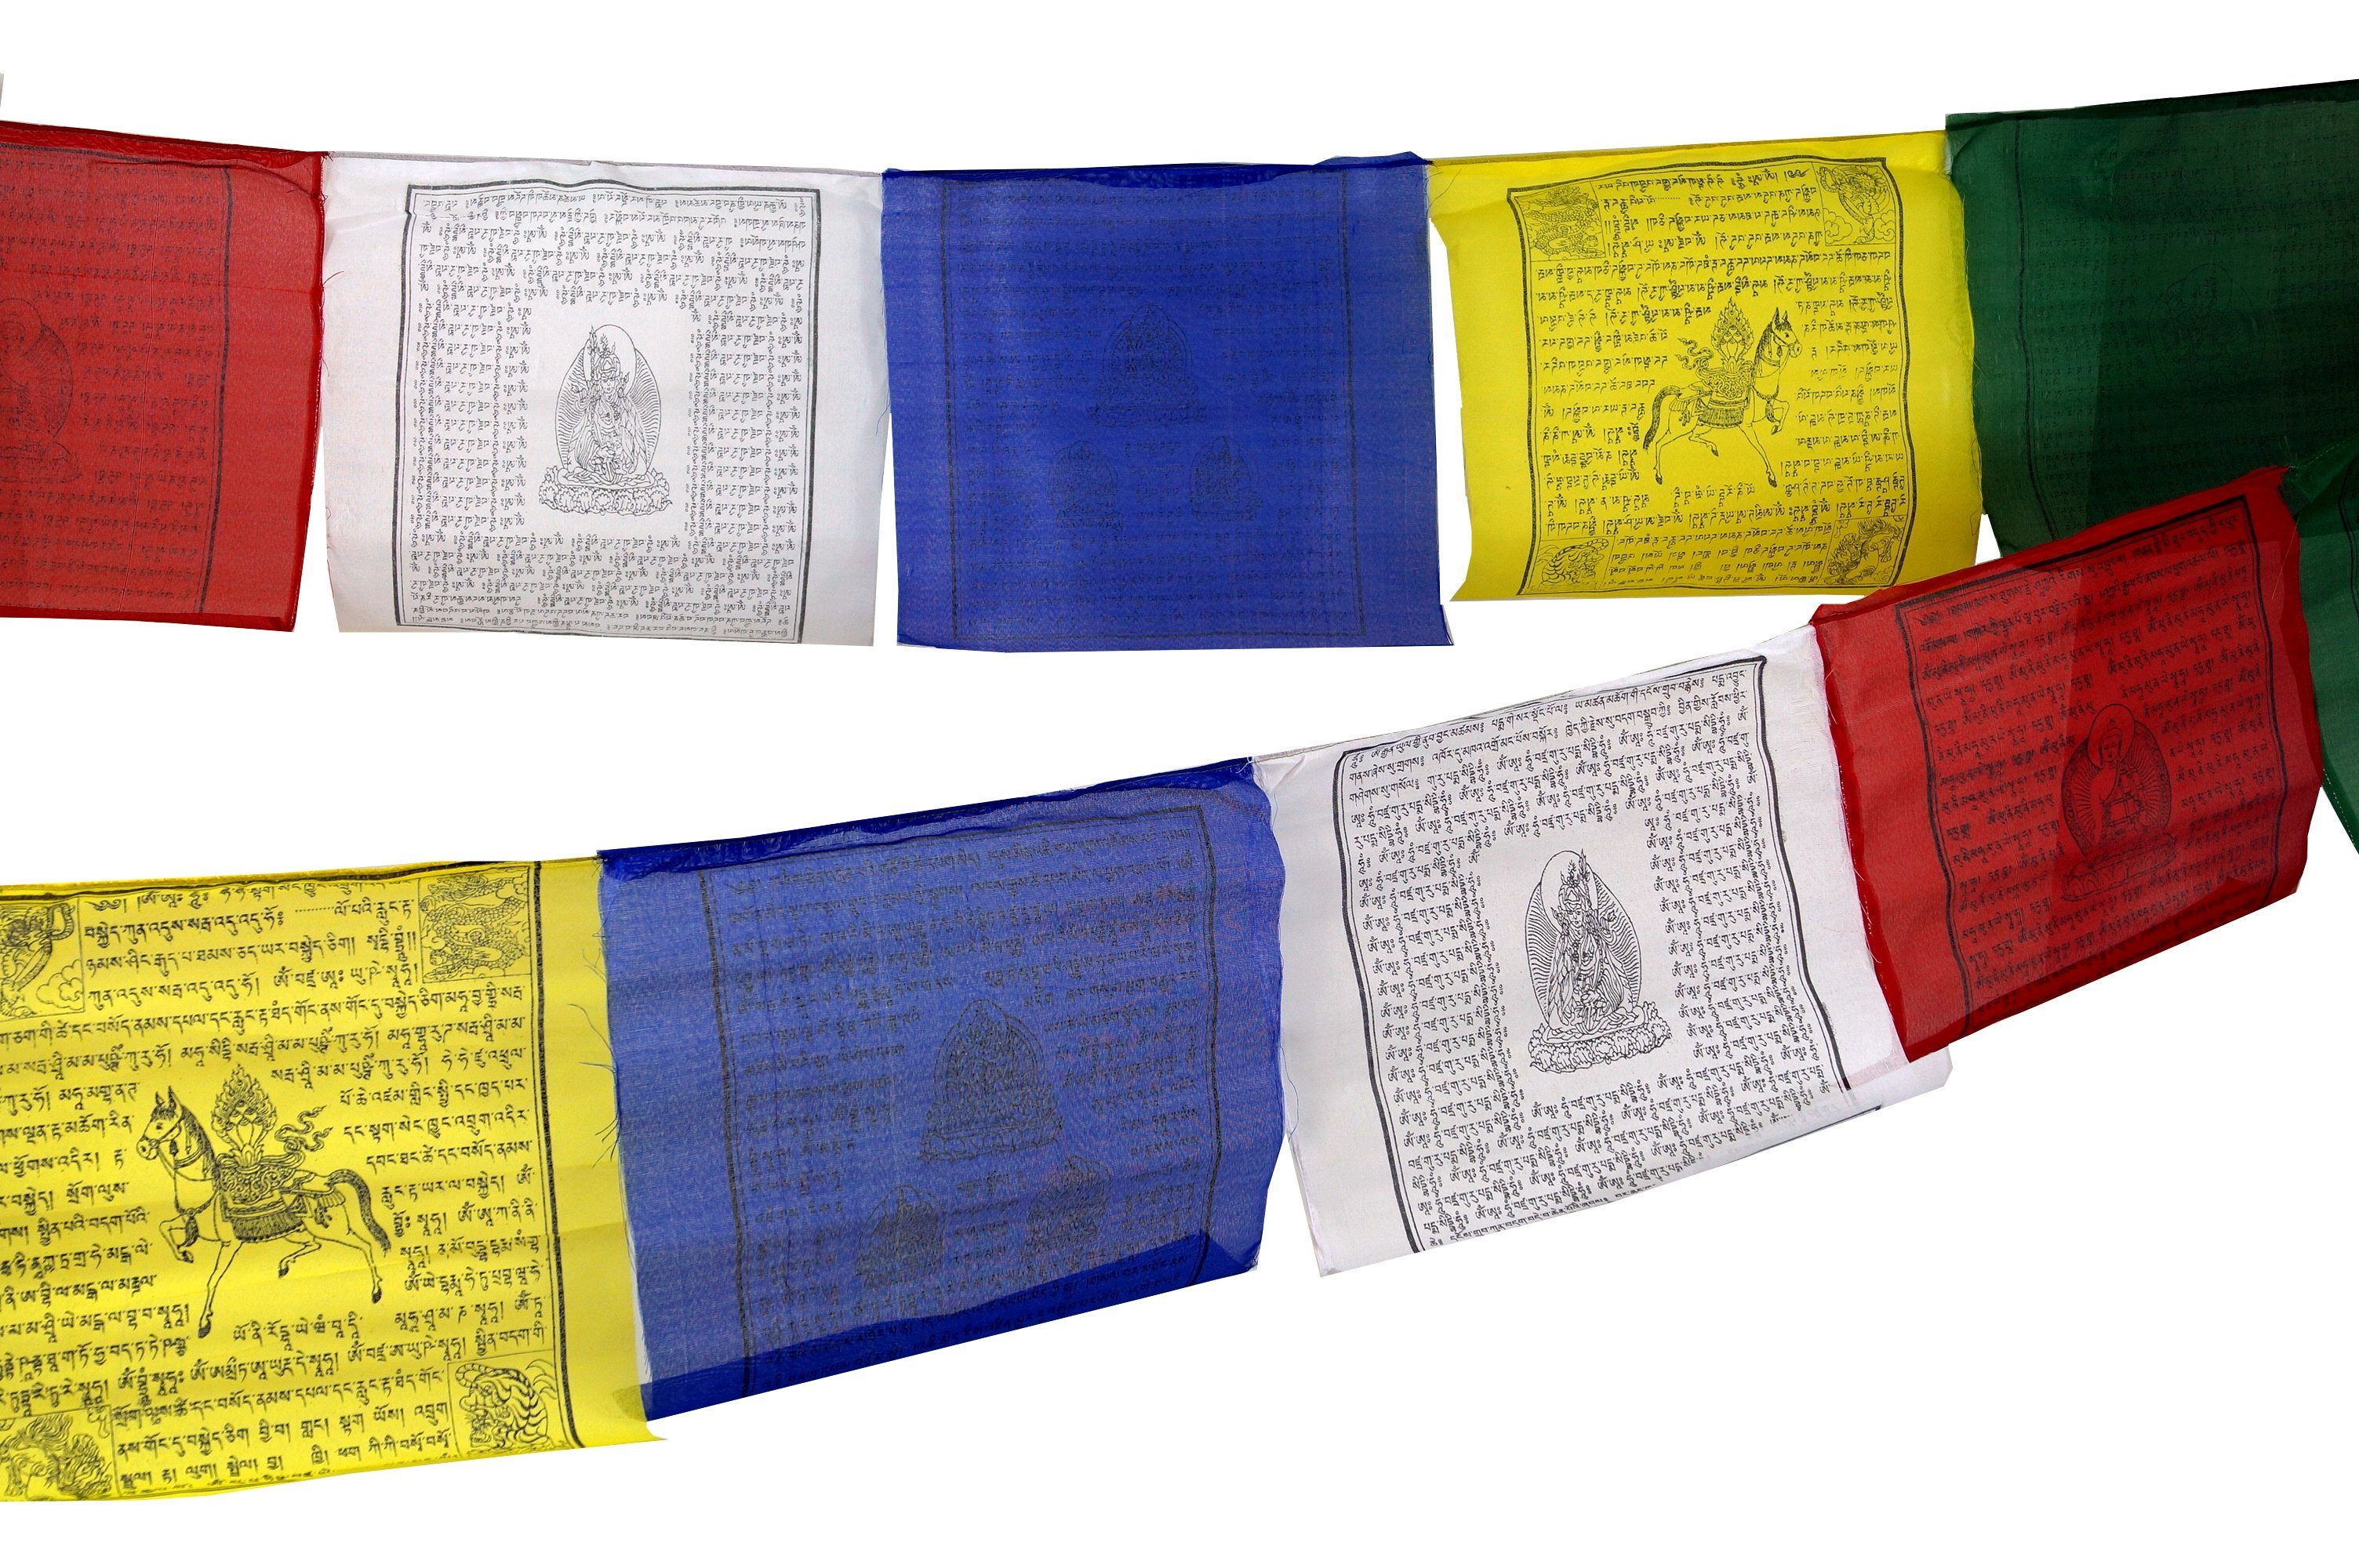 Guru-Shop Wimpelkette Gebetsfahnen (Tibet) 1,50 12*12 Sparpack.. m Stück (wimpel lang 5 cm)